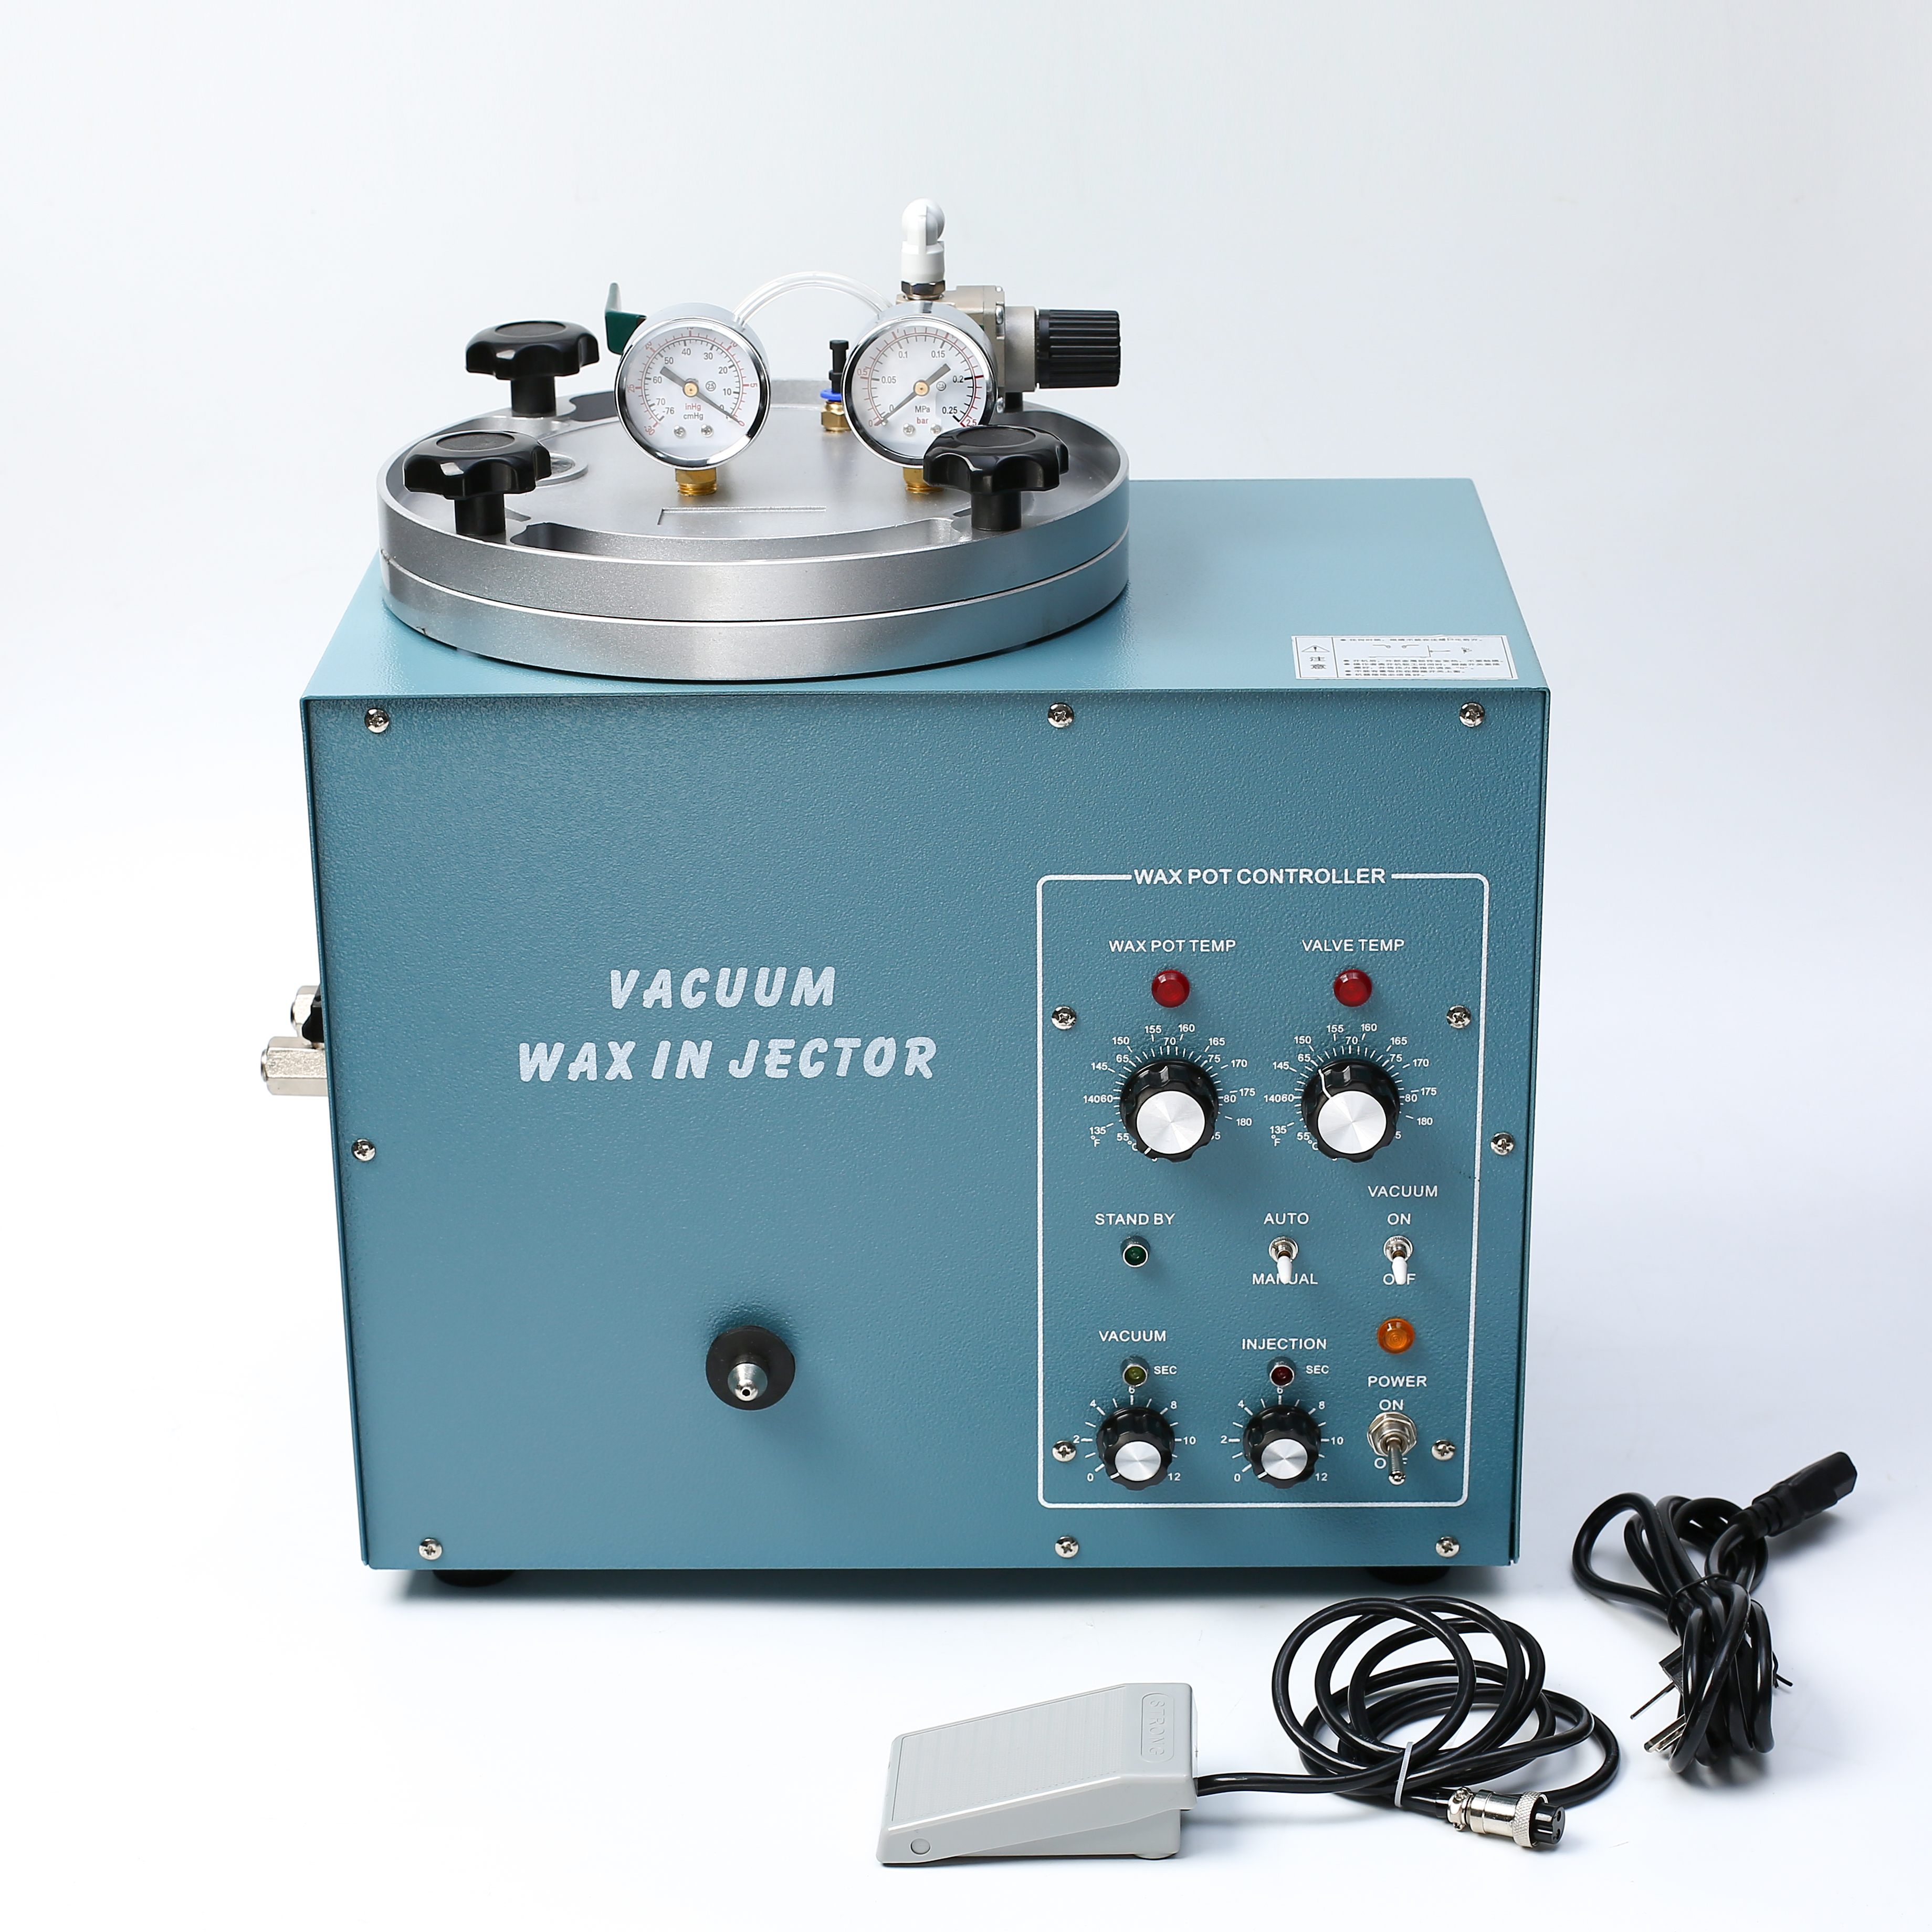 W-04 Vacuum wax injector